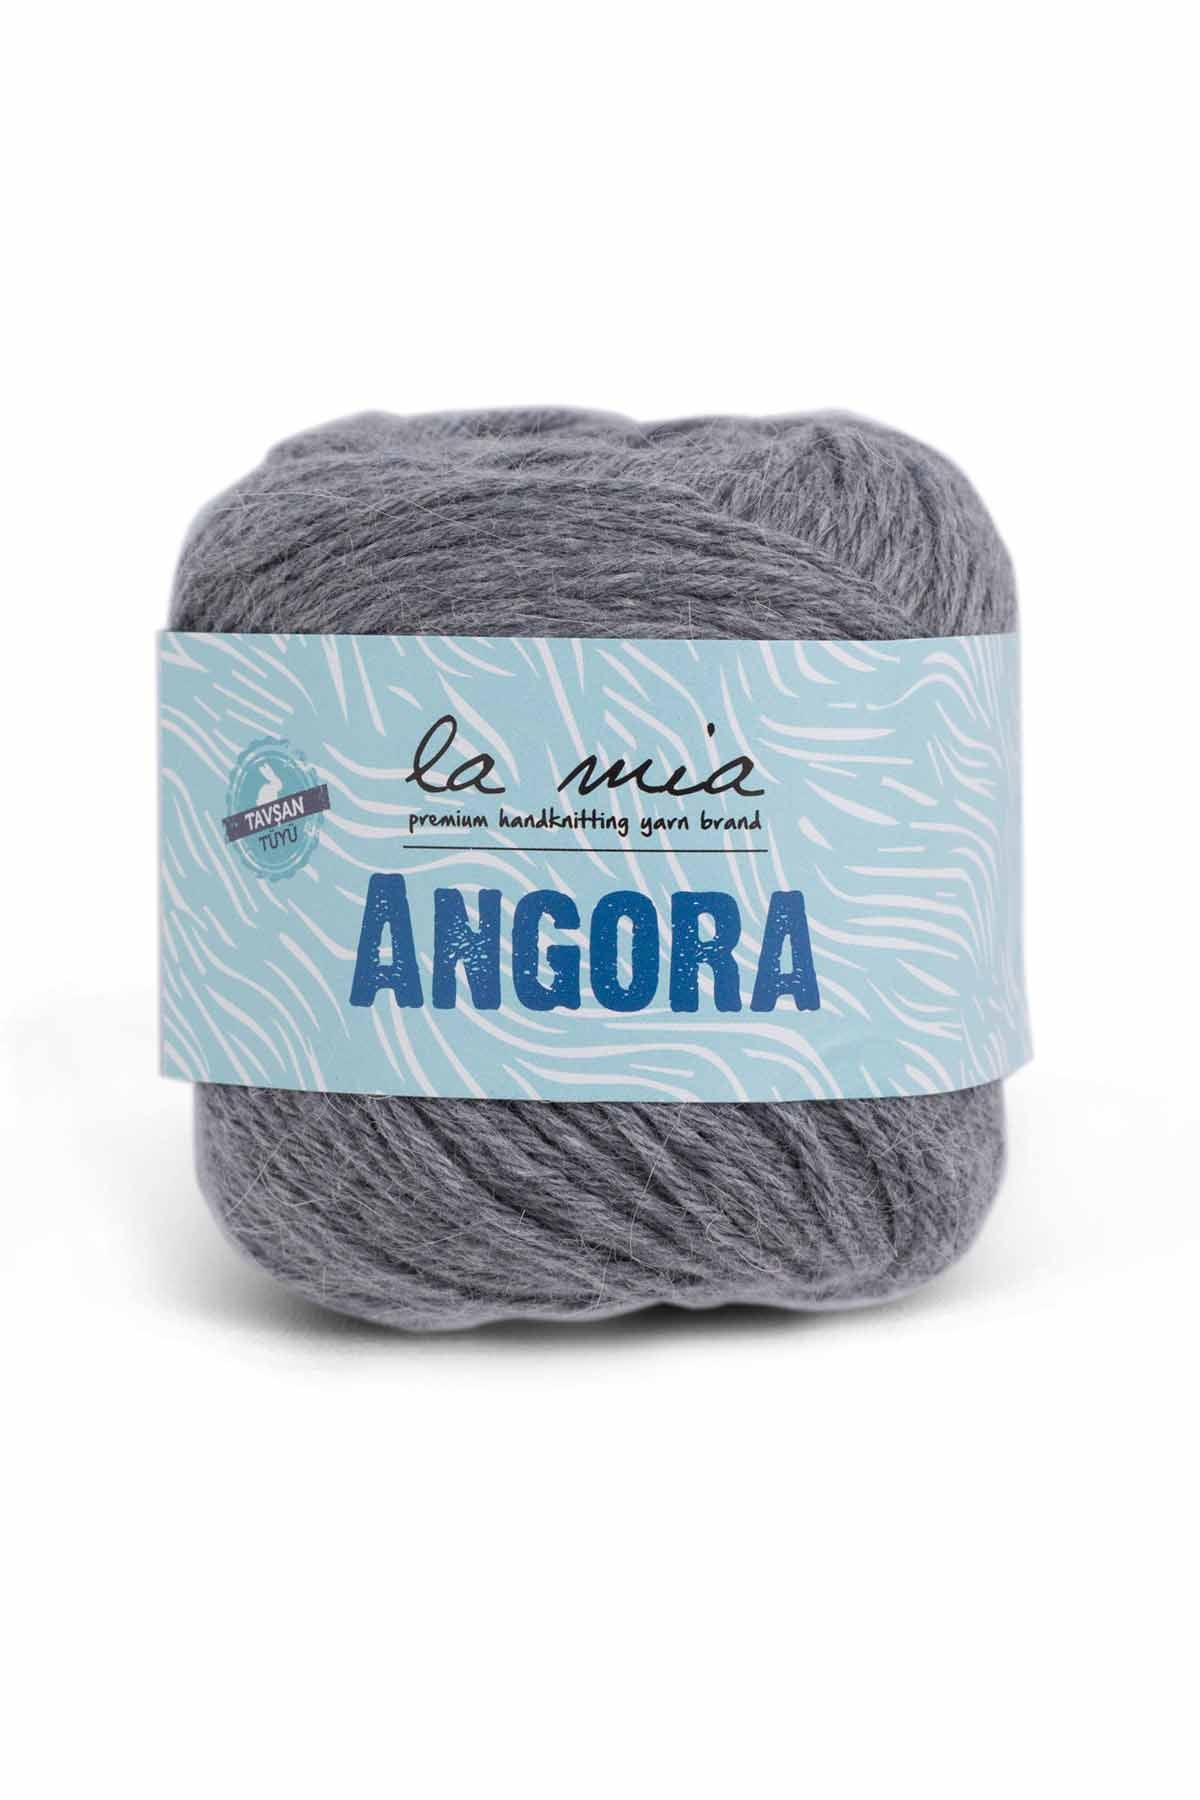 La Mia Angora Wool Yarn